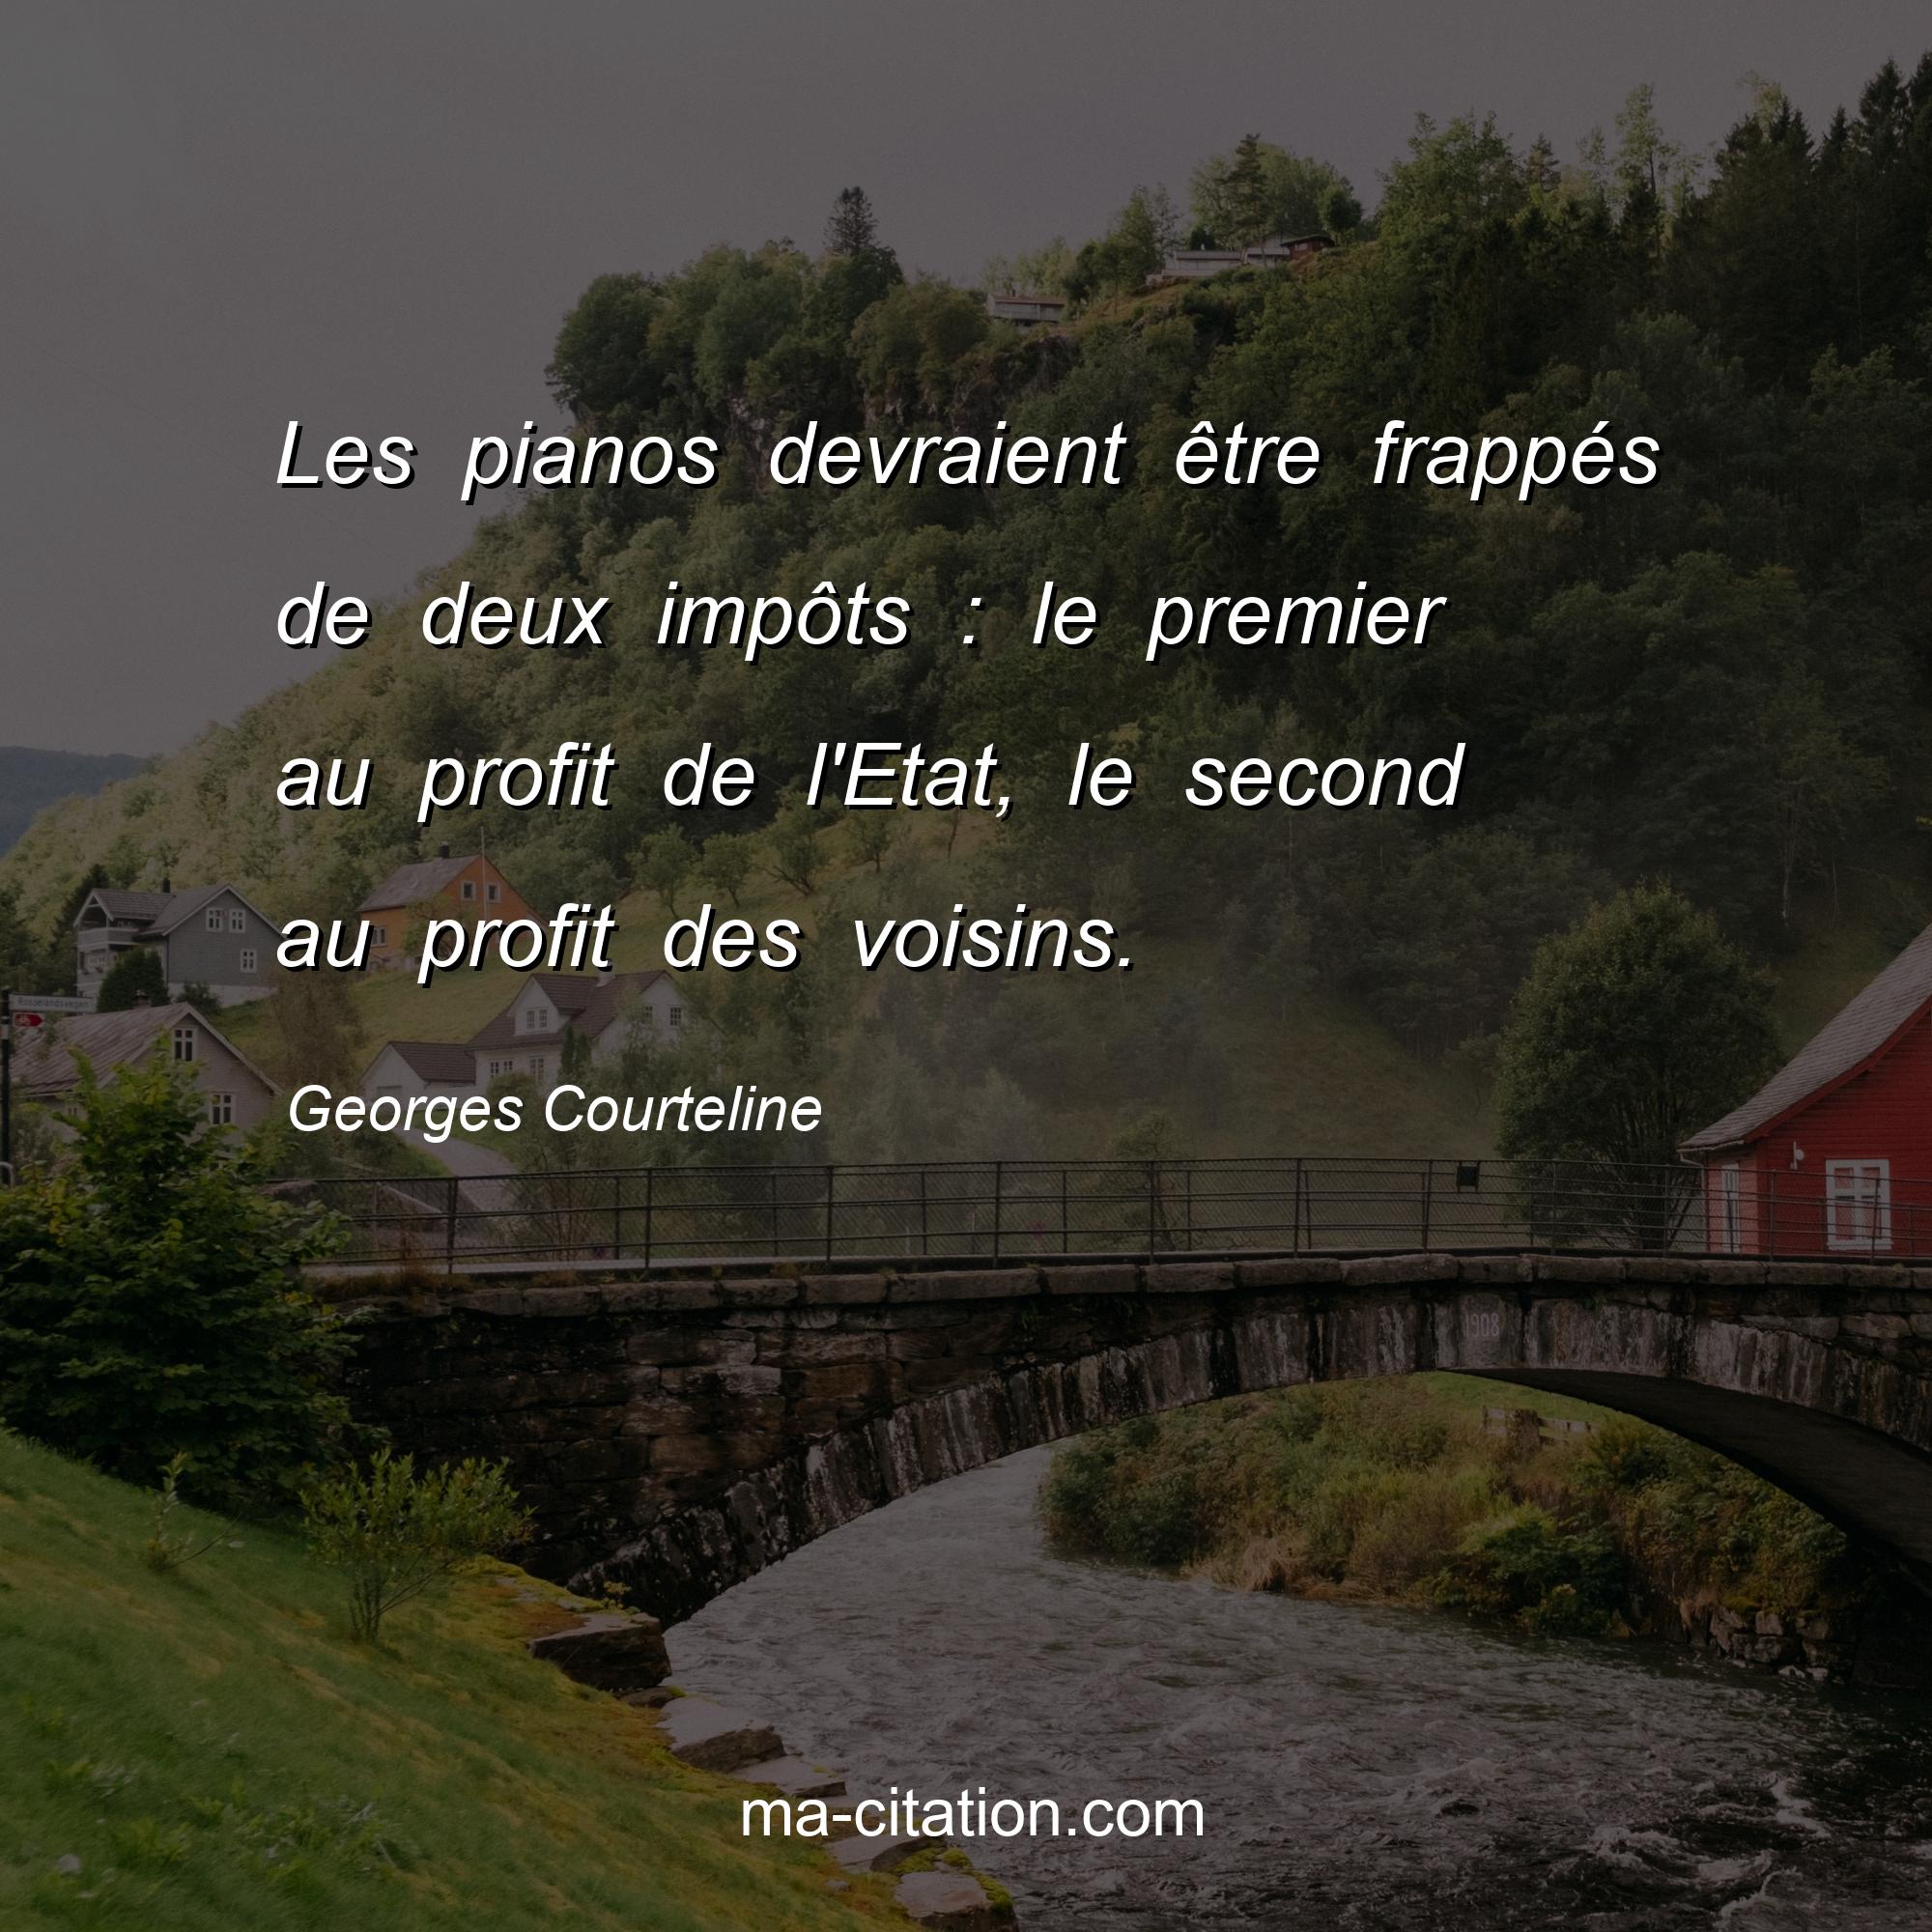 Georges Courteline : Les pianos devraient être frappés de deux impôts : le premier au profit de l'Etat, le second au profit des voisins.